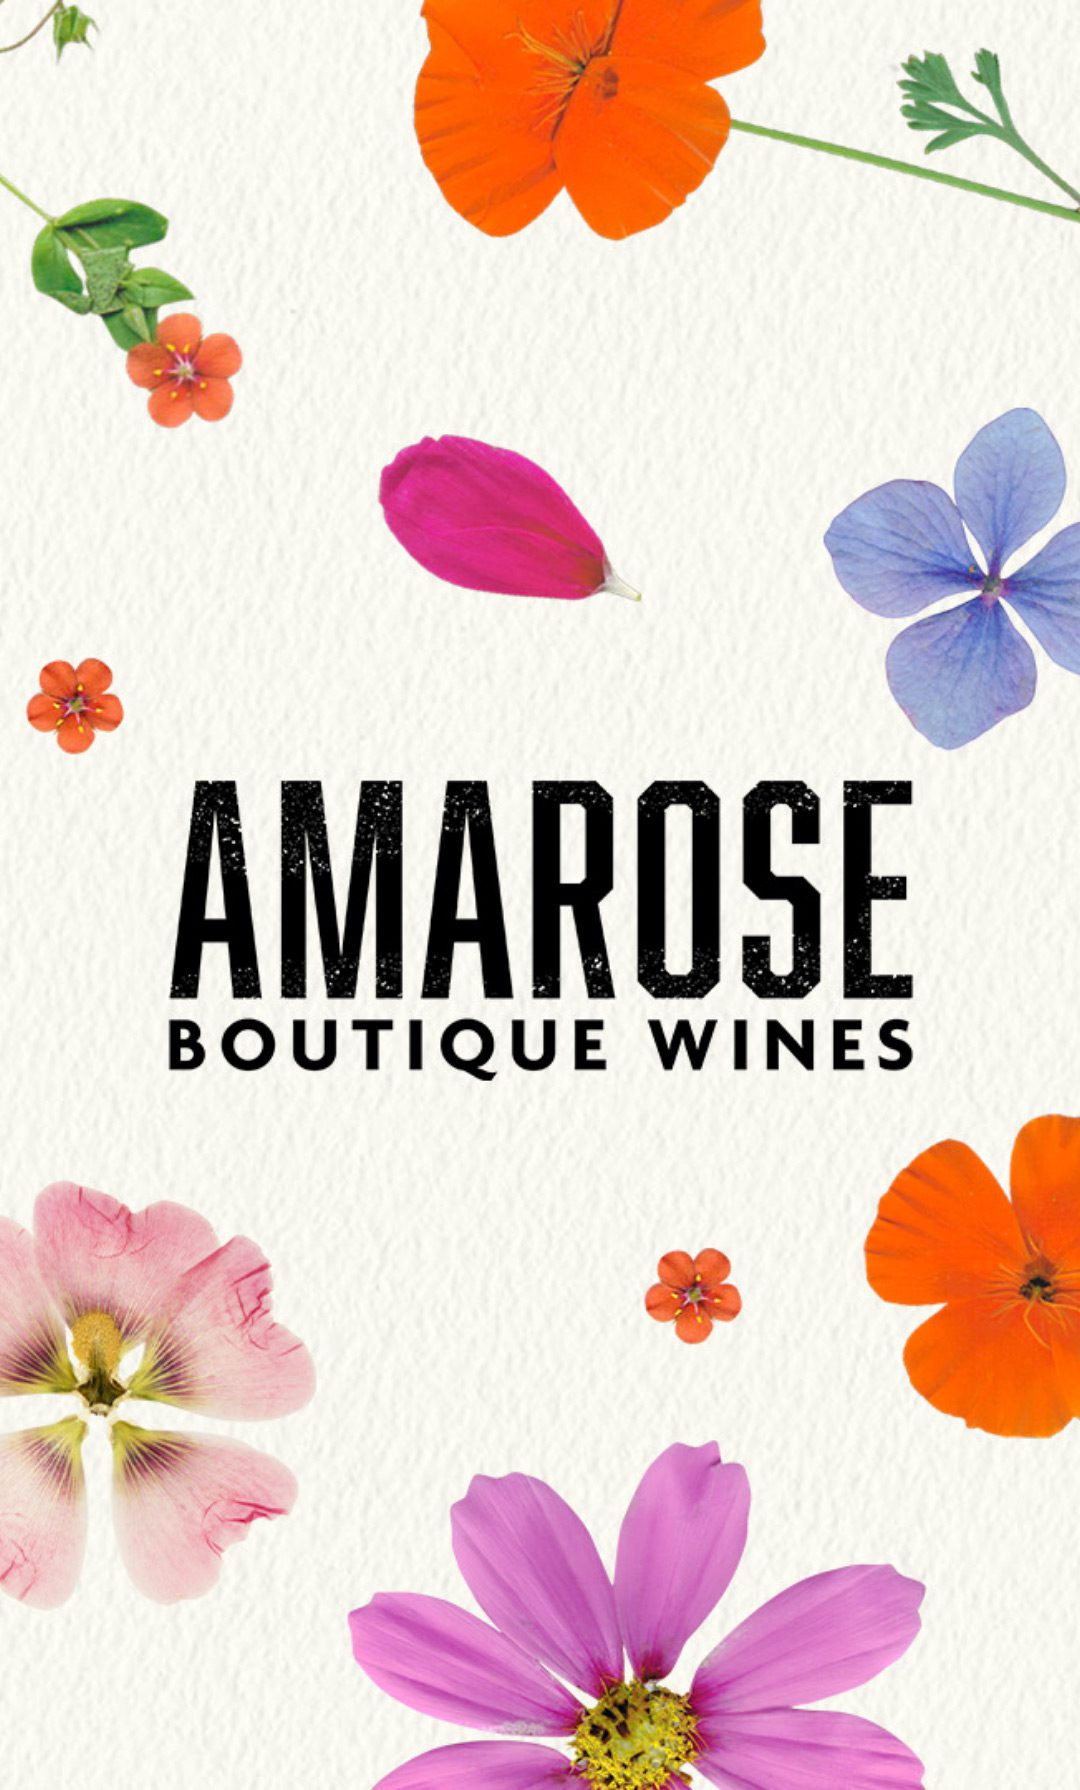 Amarose boutique wines brand design